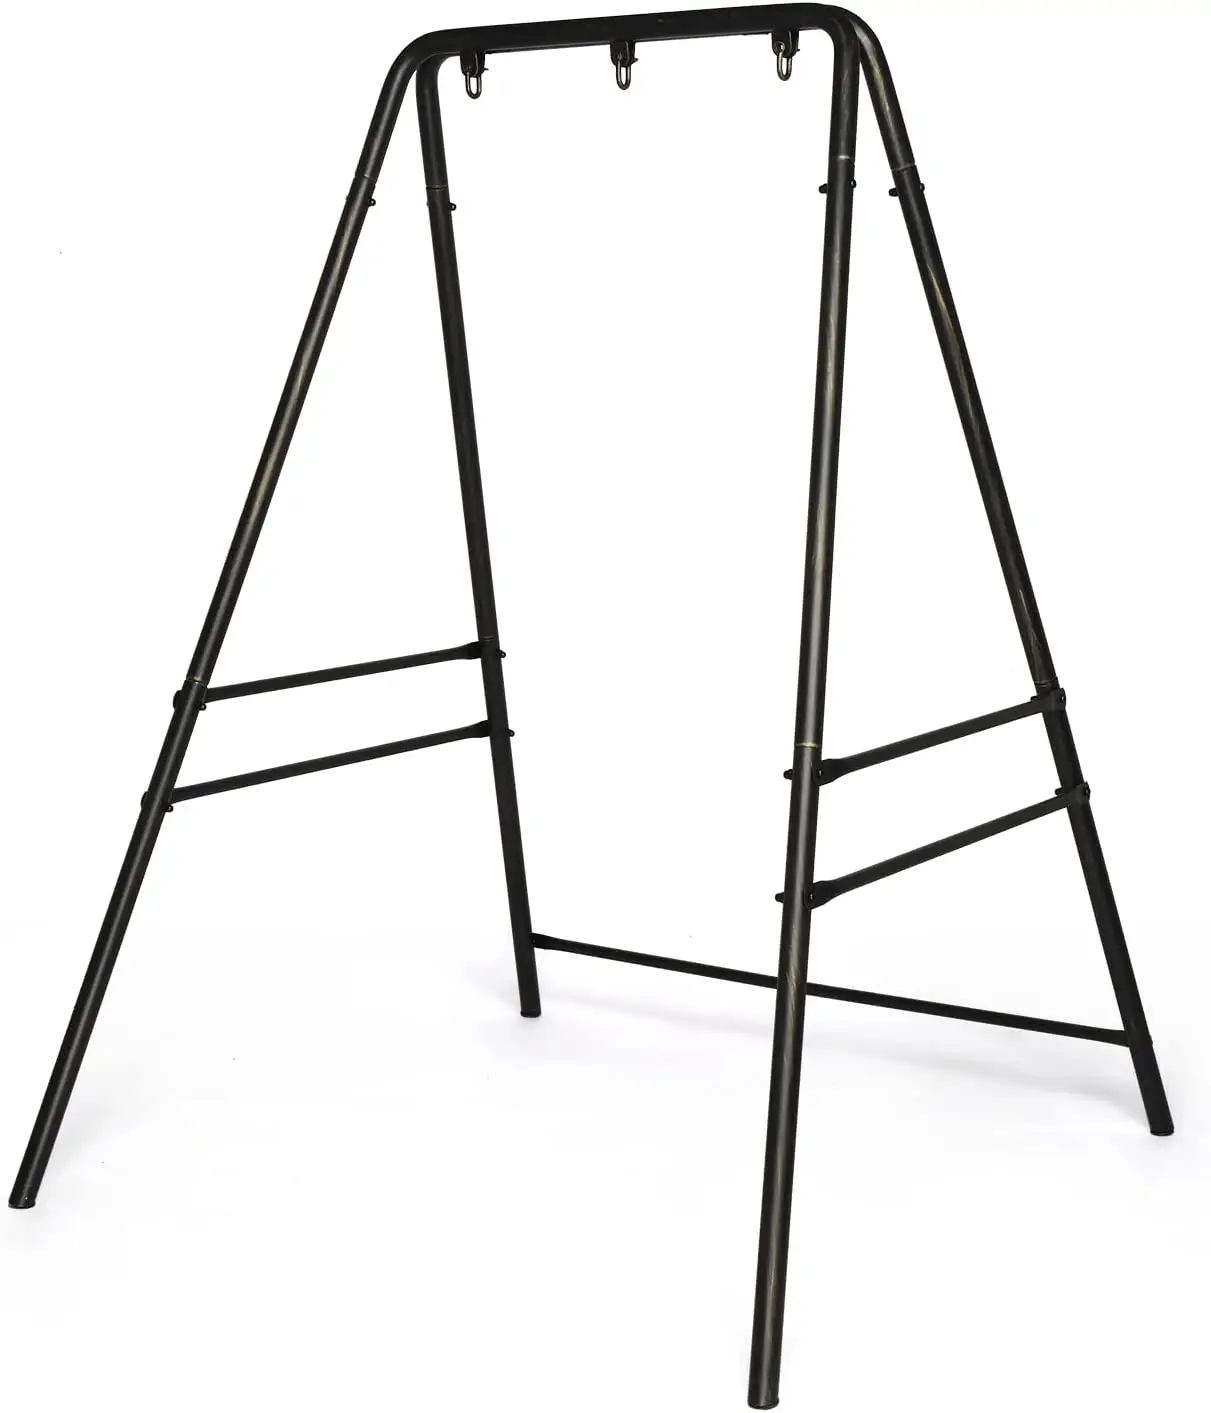 Kualitas Terbaik ayunan berdiri tugas berat kursi gantung berdiri bingkai ayunan logam set untuk halaman belakang tempat tidur gantung berdiri